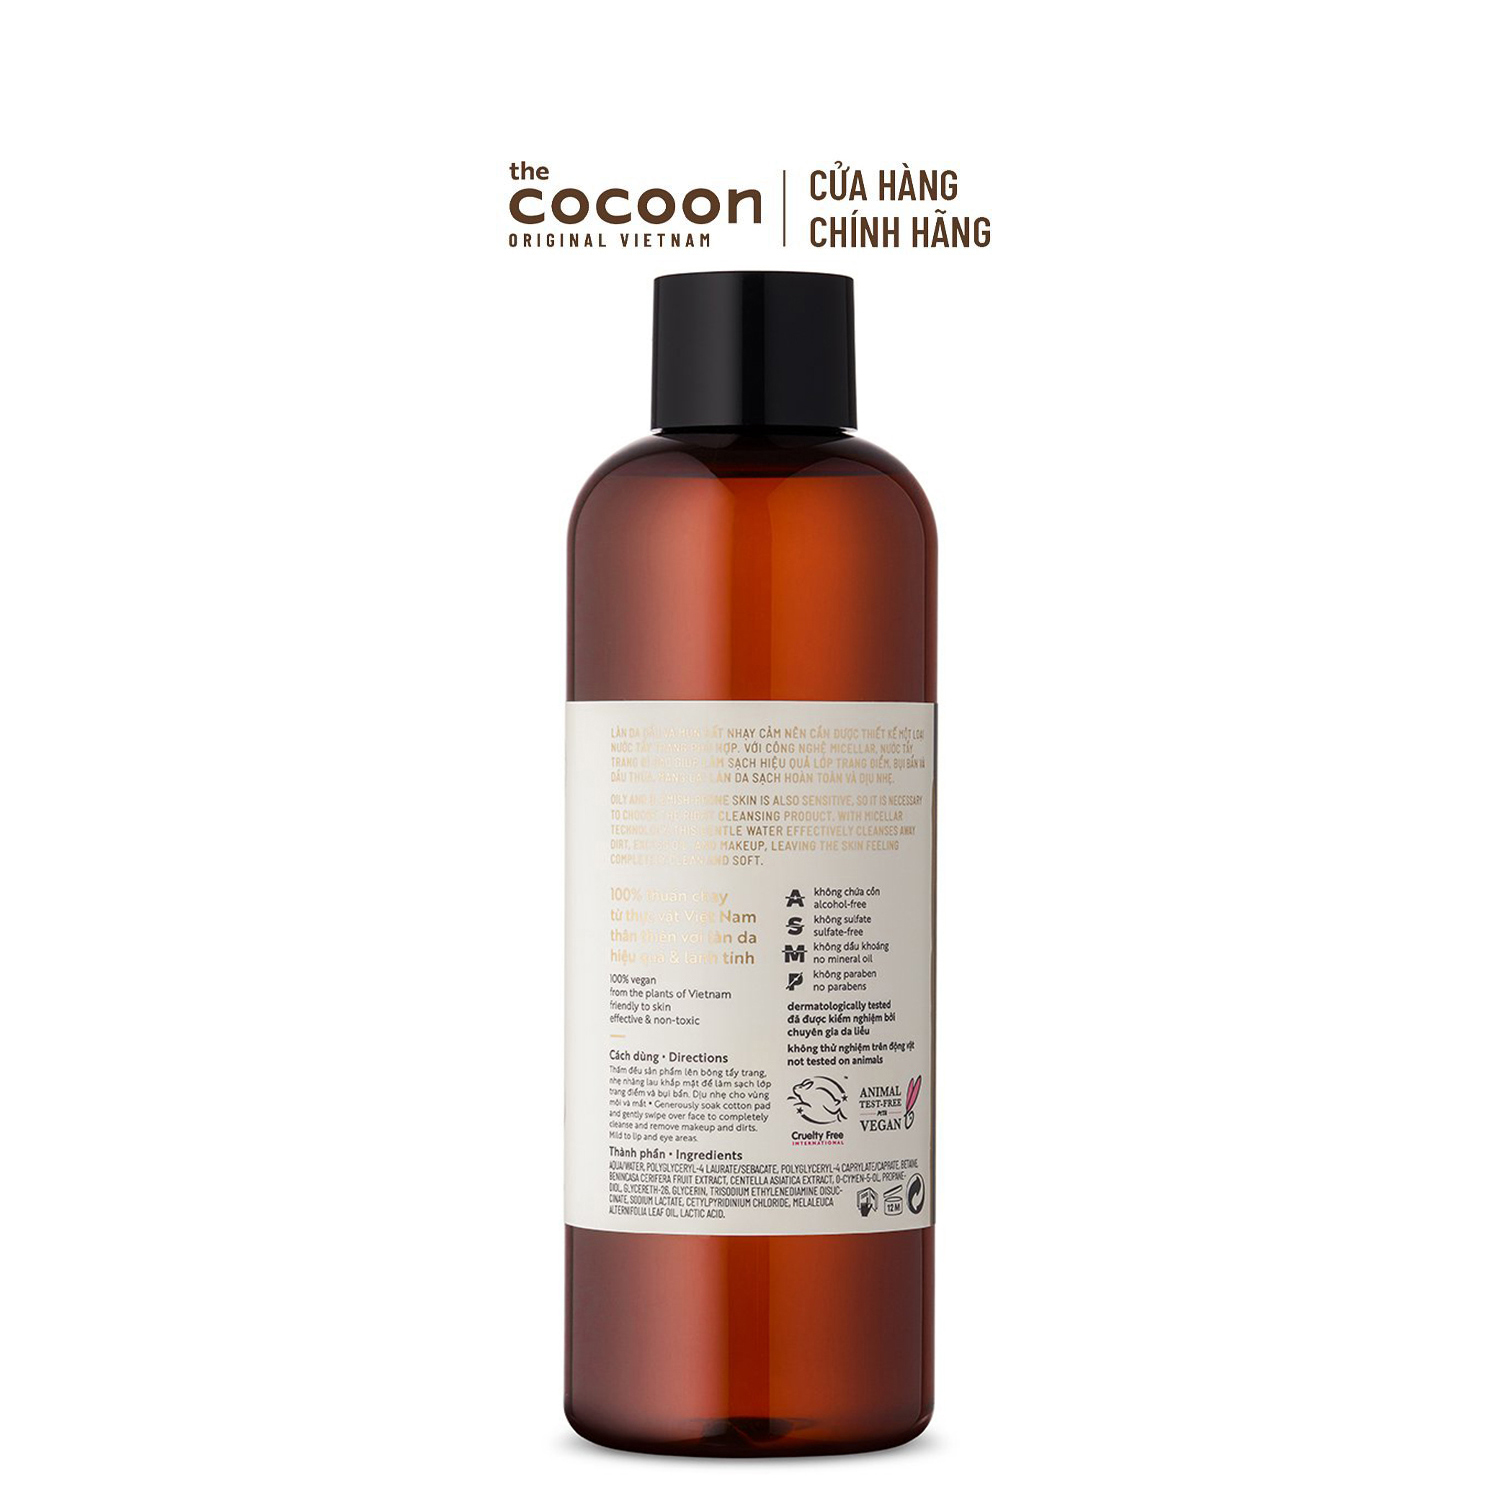 Bigsize - Nước tẩy trang bí đao Cocoon tẩy sạch makeup & giảm dầu 500ml